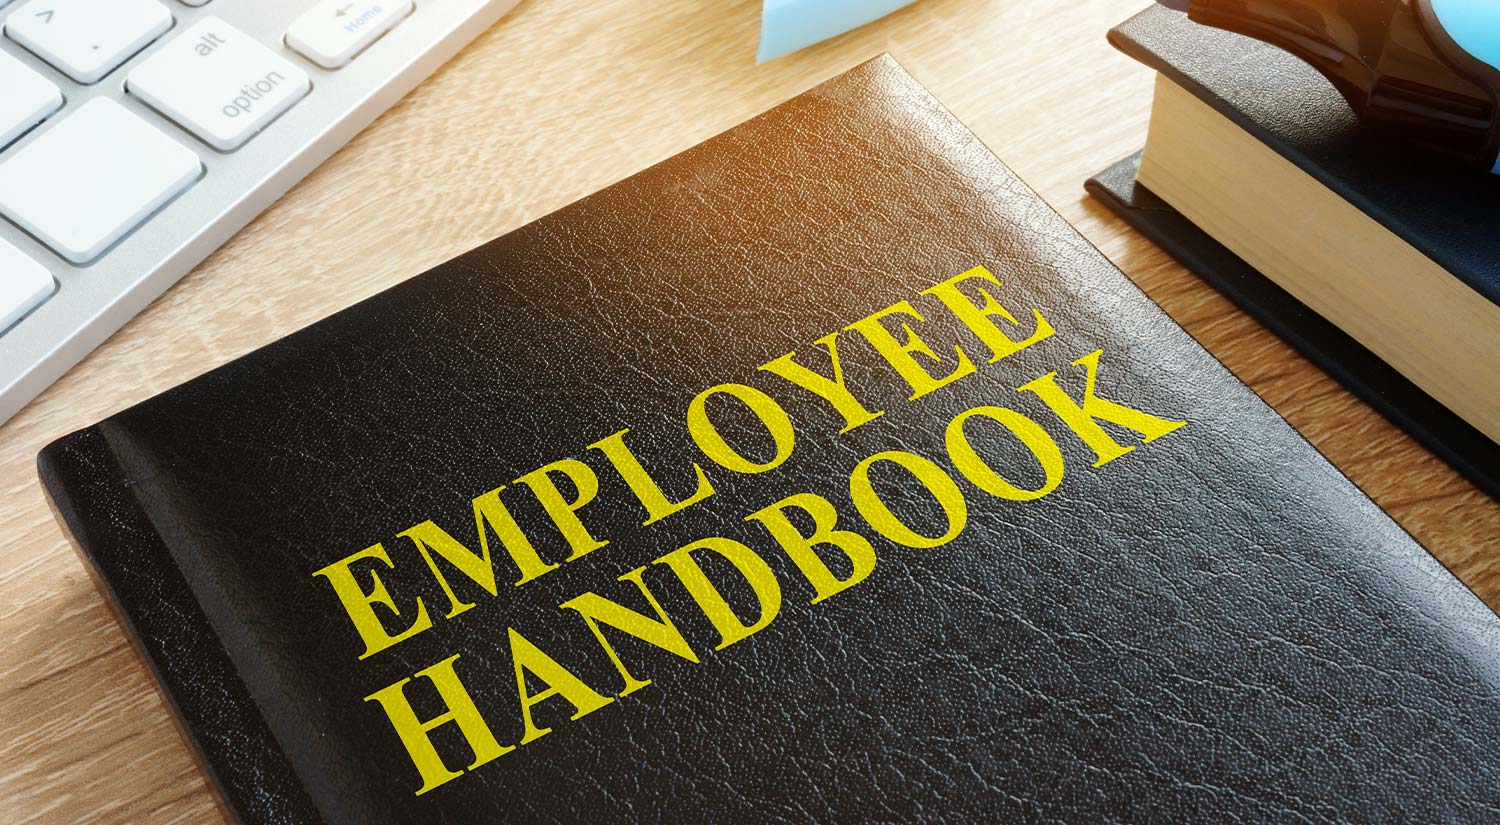 Employee Handbook Policies